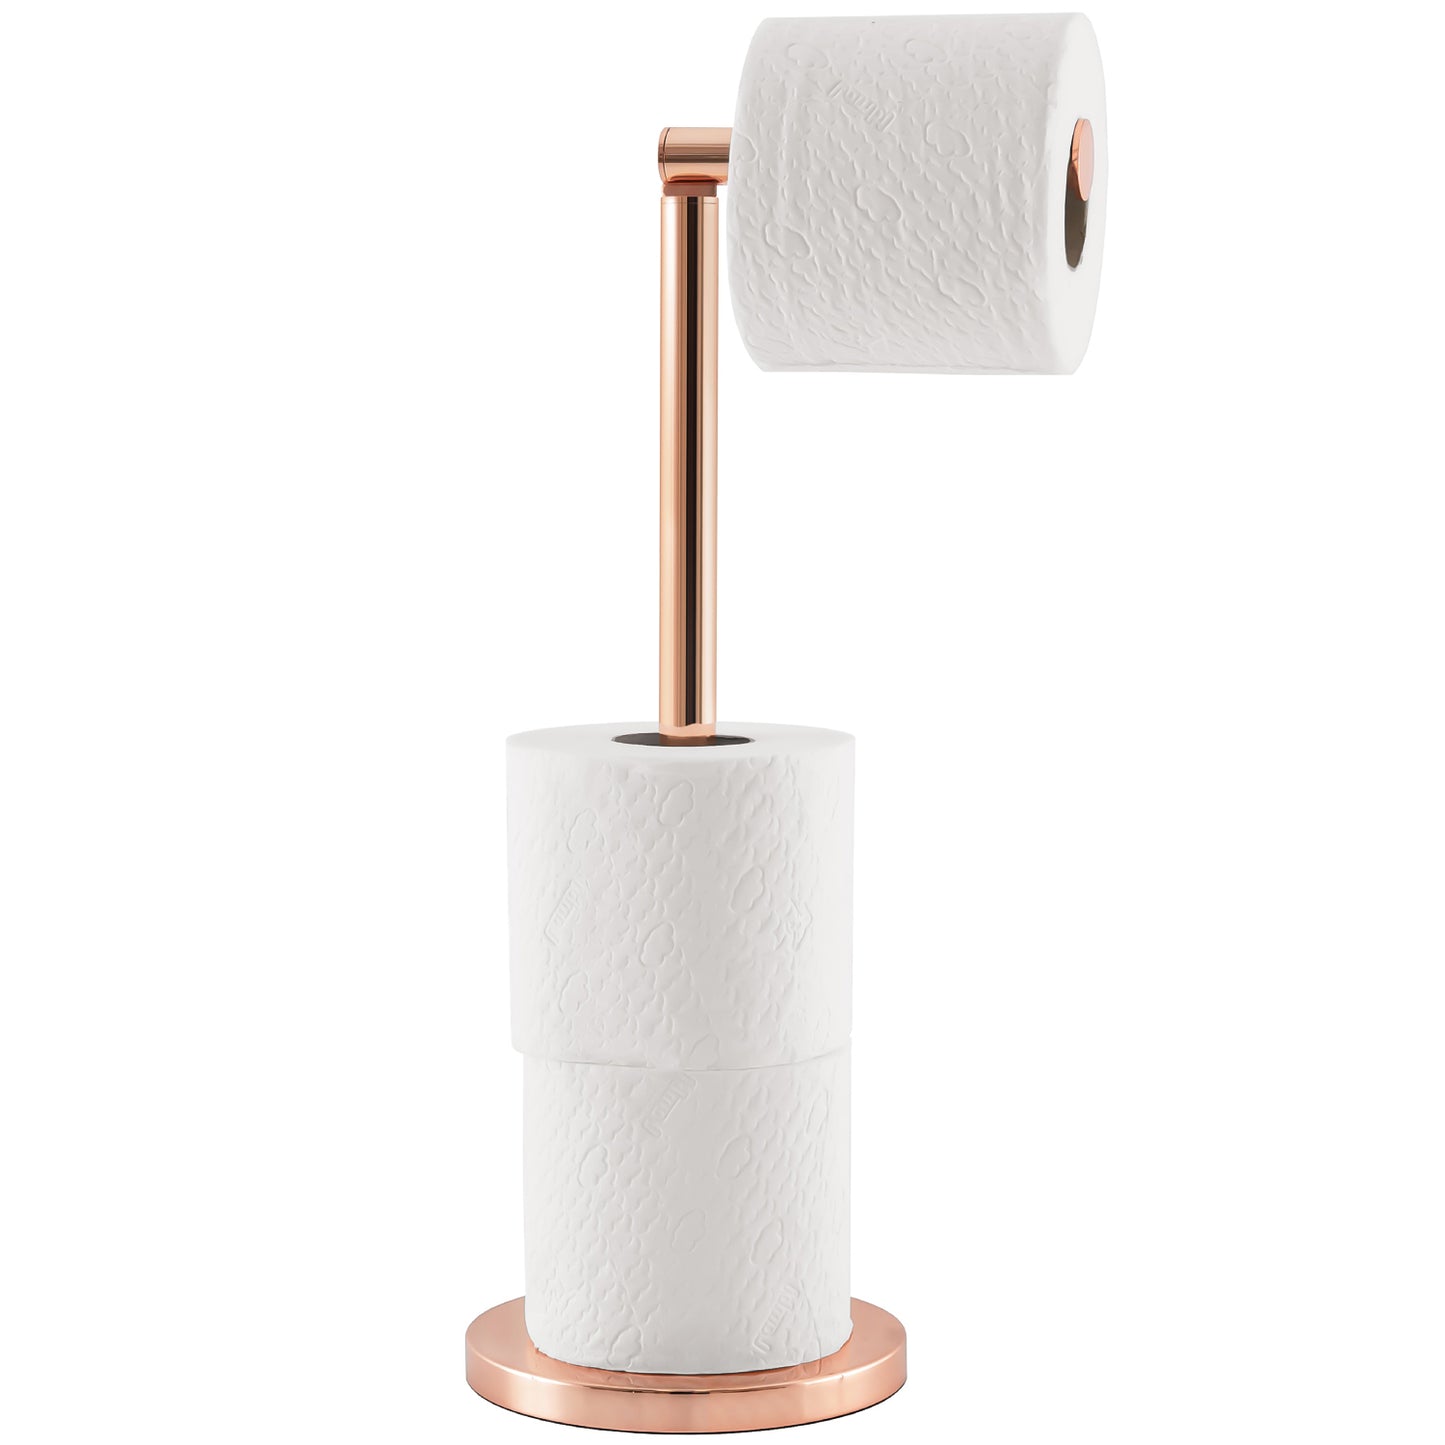 Toilet Roll Holder | Toilet Paper Storage | Free Standing Toilet Roll Holder | Toilet Paper Holder | Toilet Roll Storage